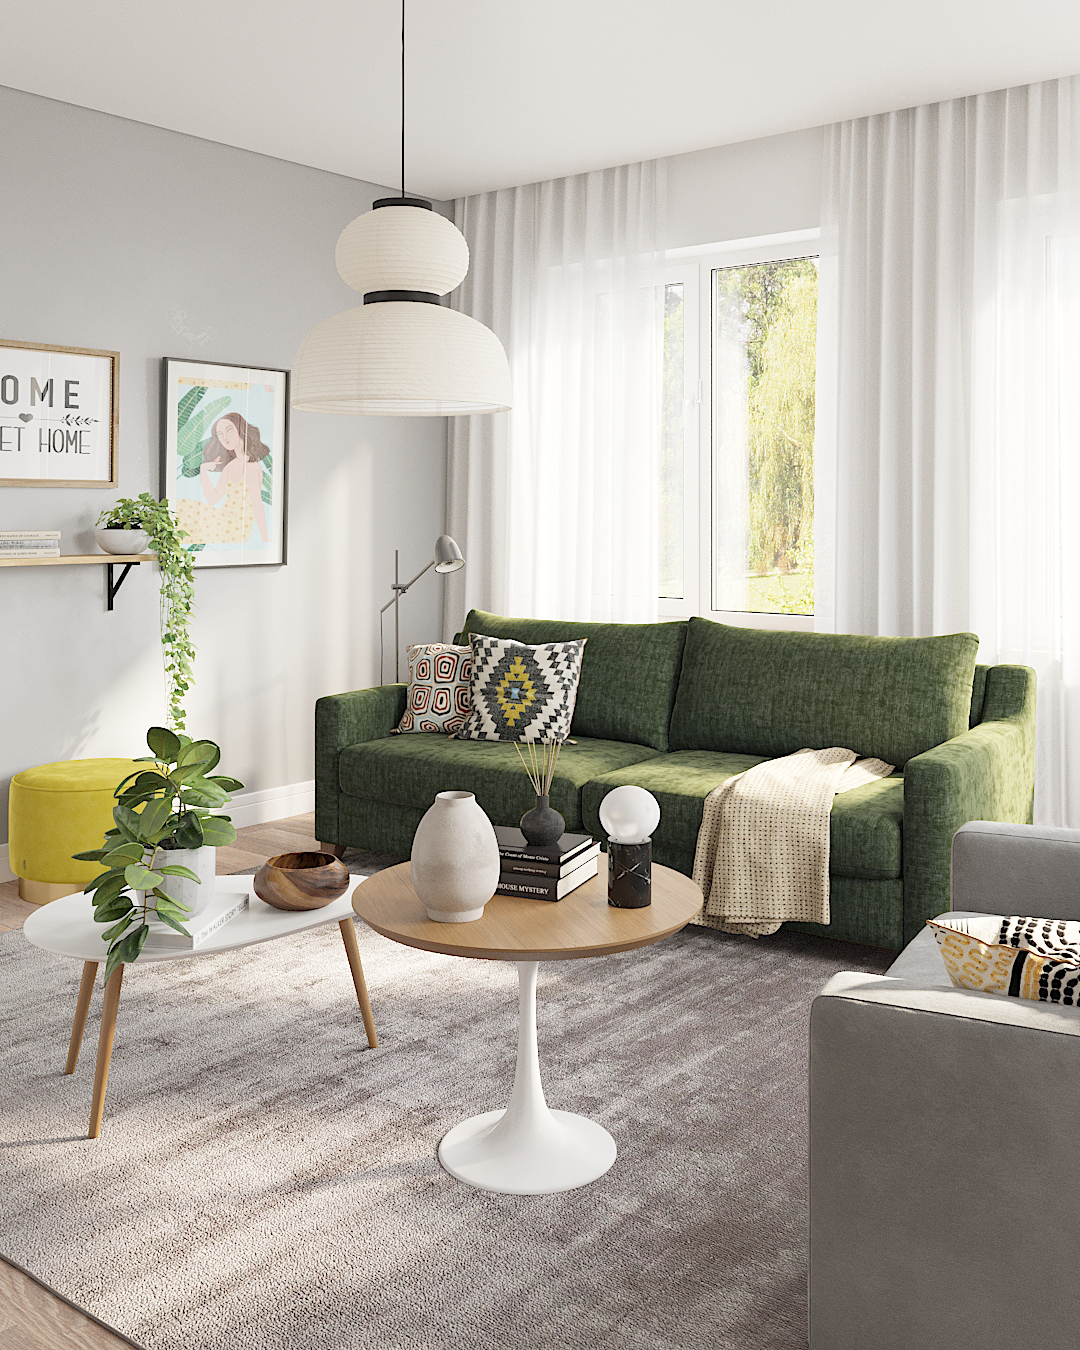 Интерьер гостиной с диваном Mendini травяного цвета: фото